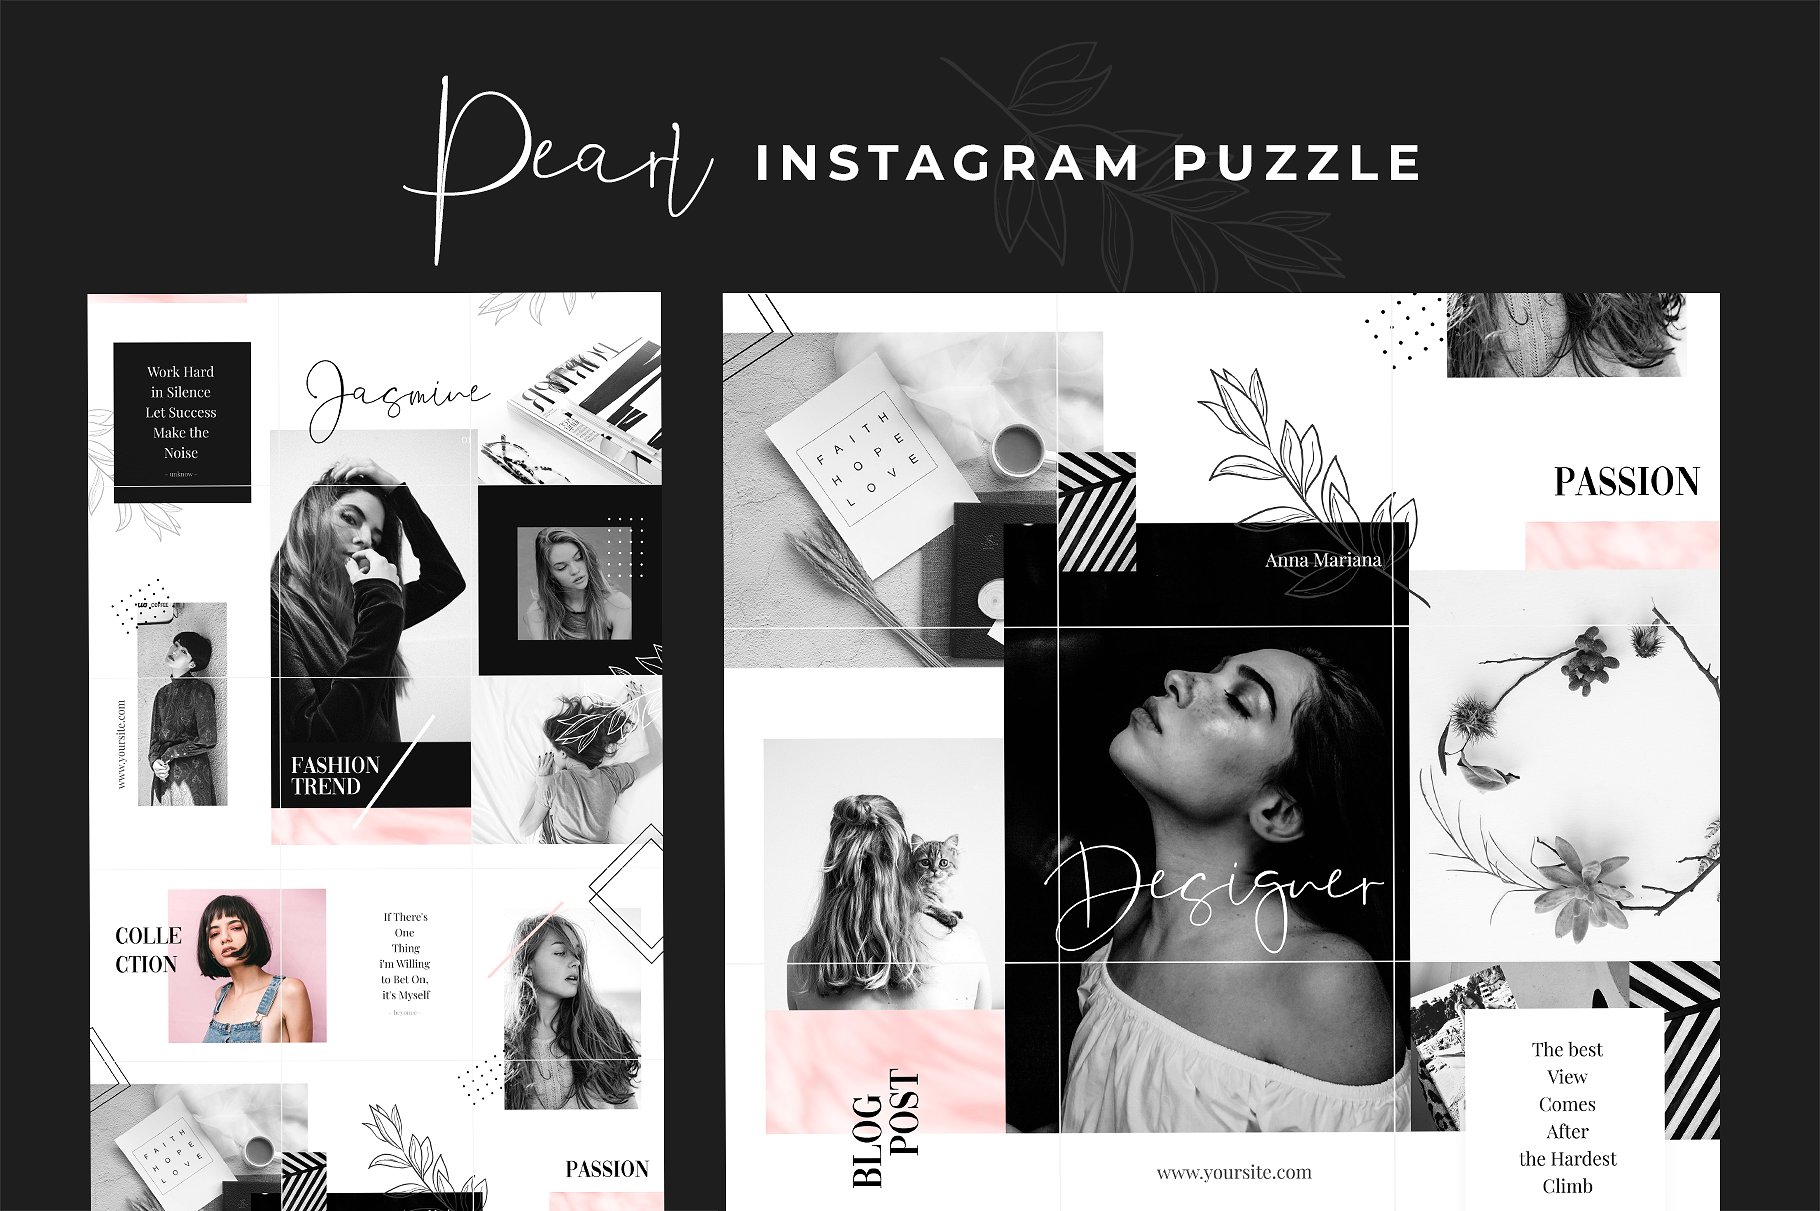 时尚高端的Instagram 社交媒体模板第一素材精选合辑下载 Royal Instagram Bundle [psd]插图(9)